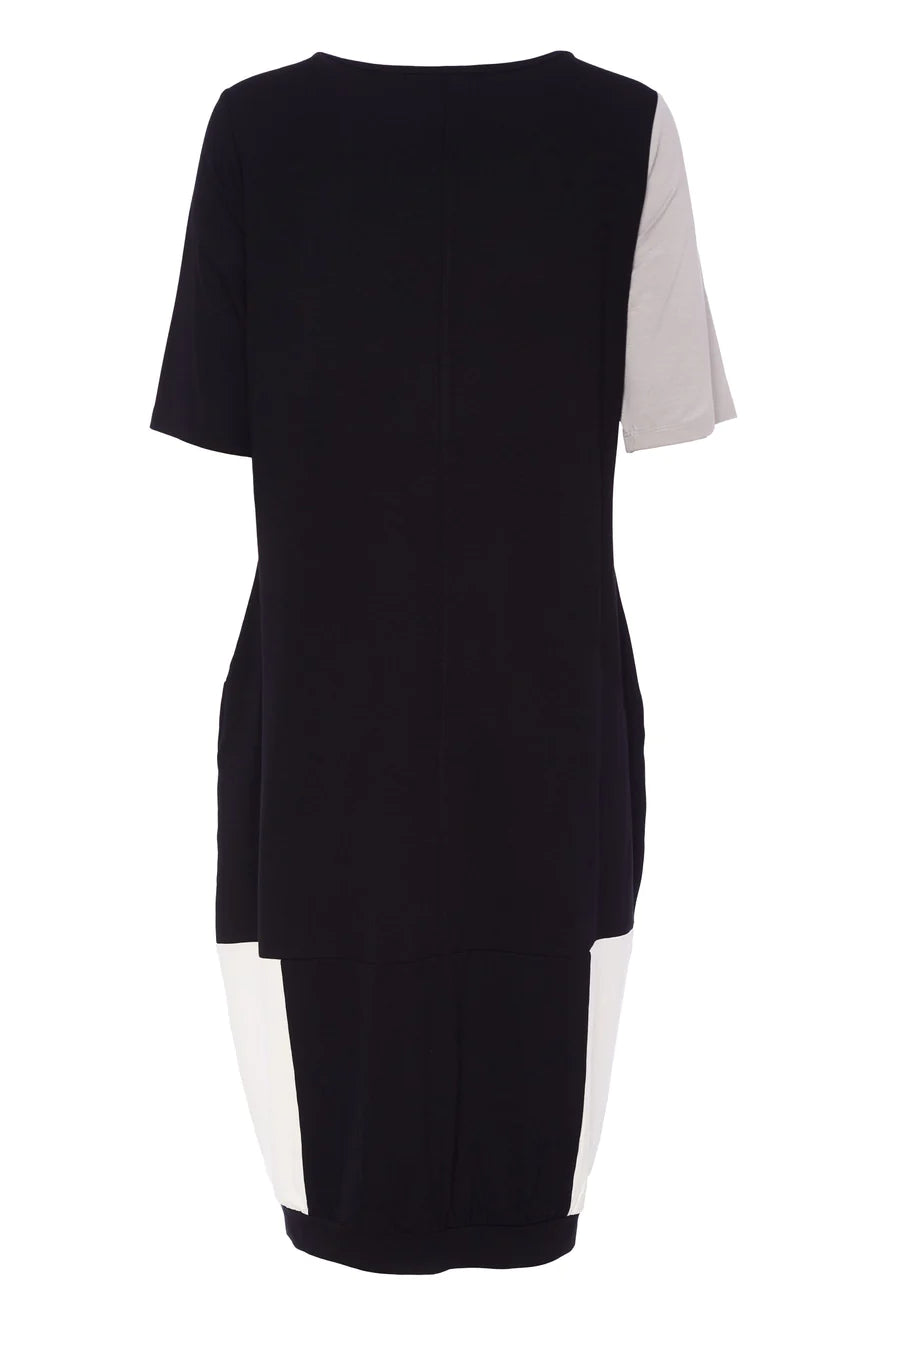 NAYA - Block Colour Jersey Dress 5